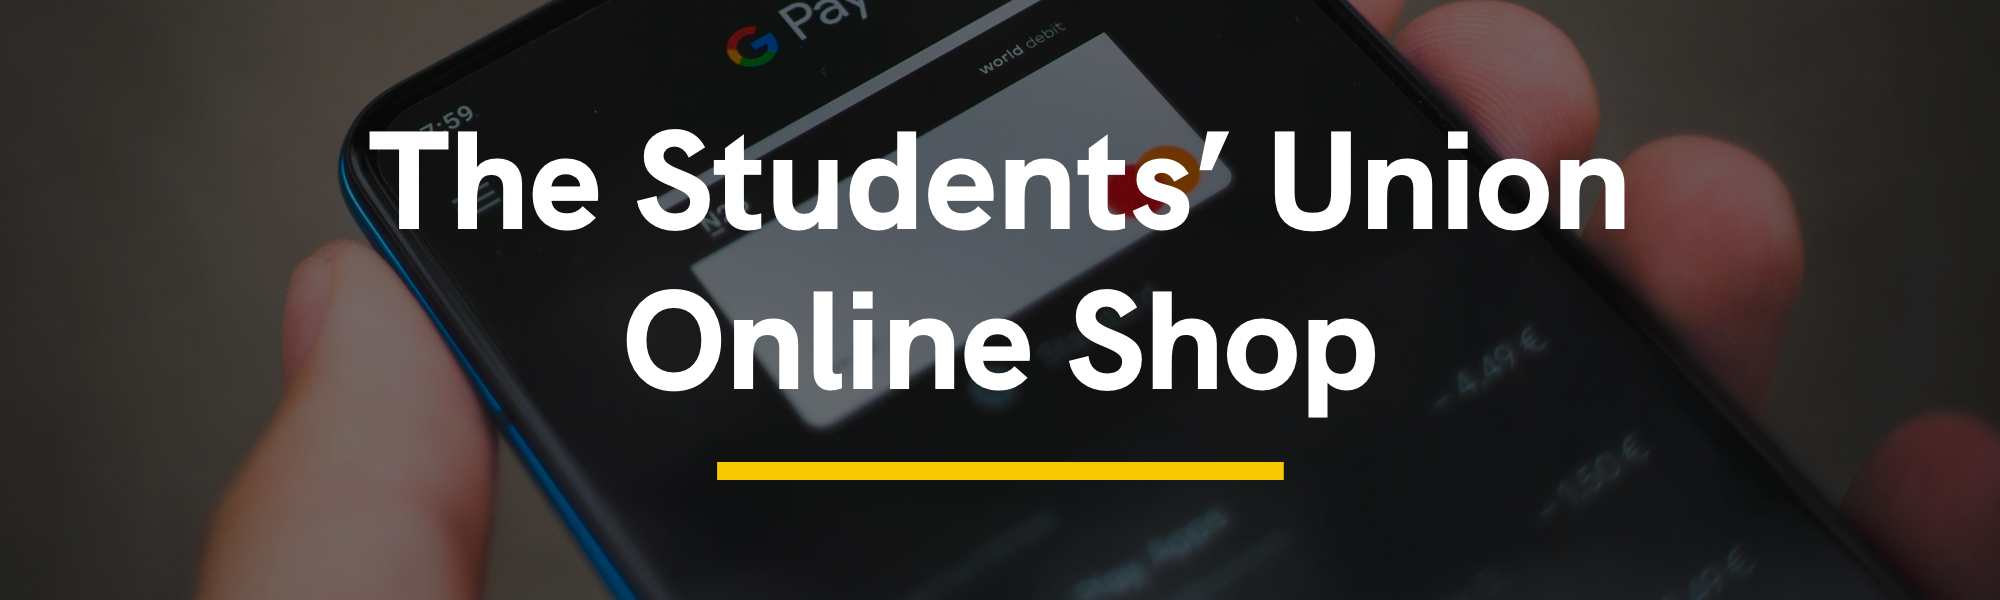 The Students' Union Online Shop